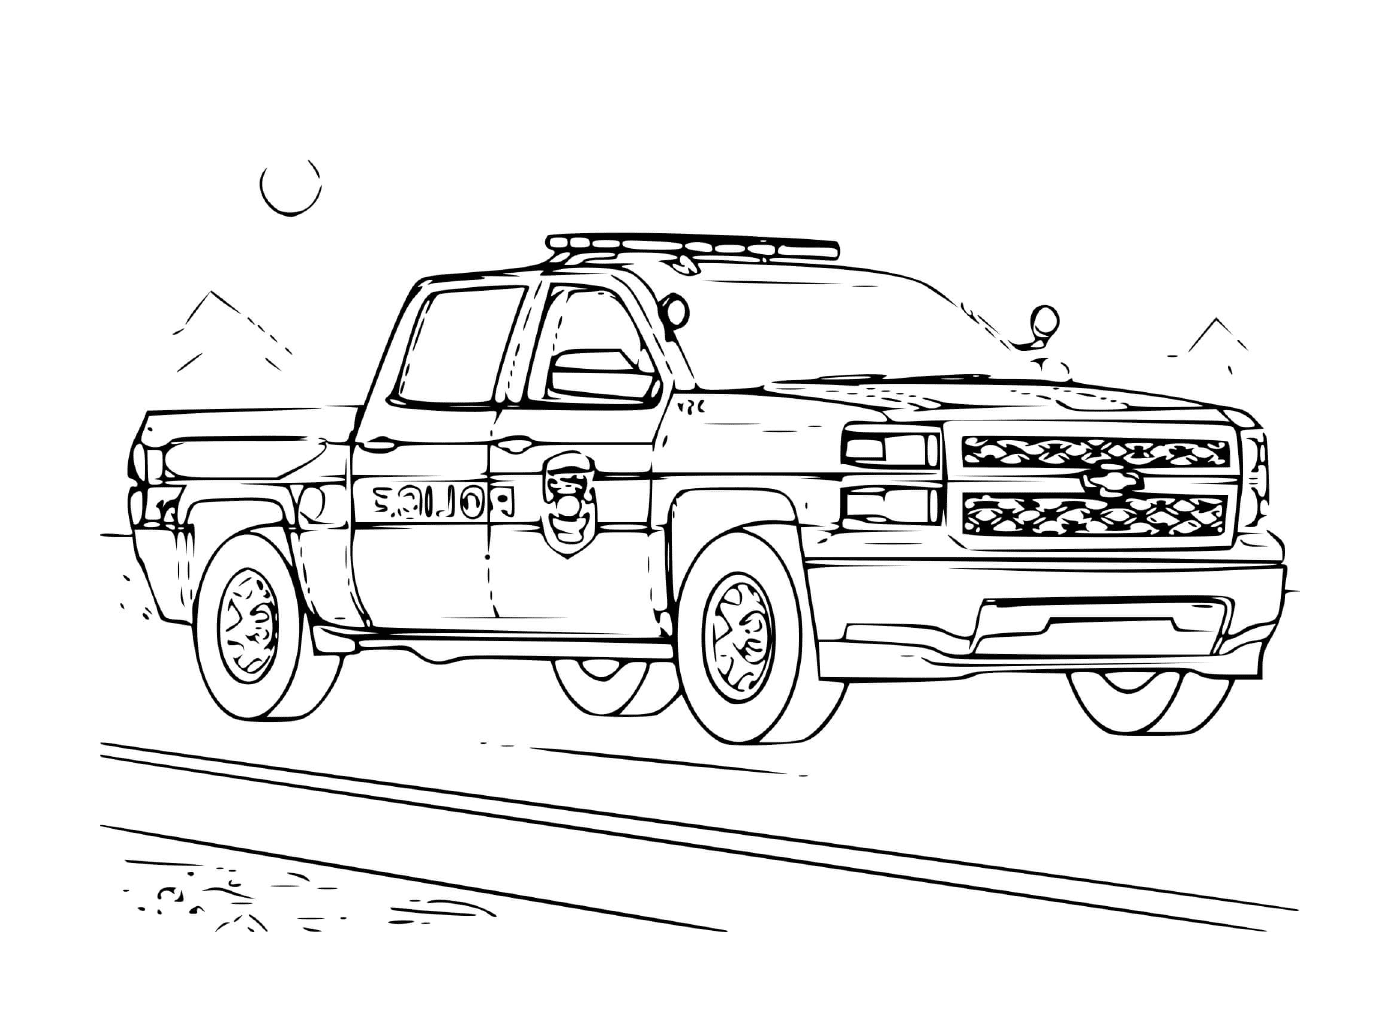  Veículo de polícia off-road 